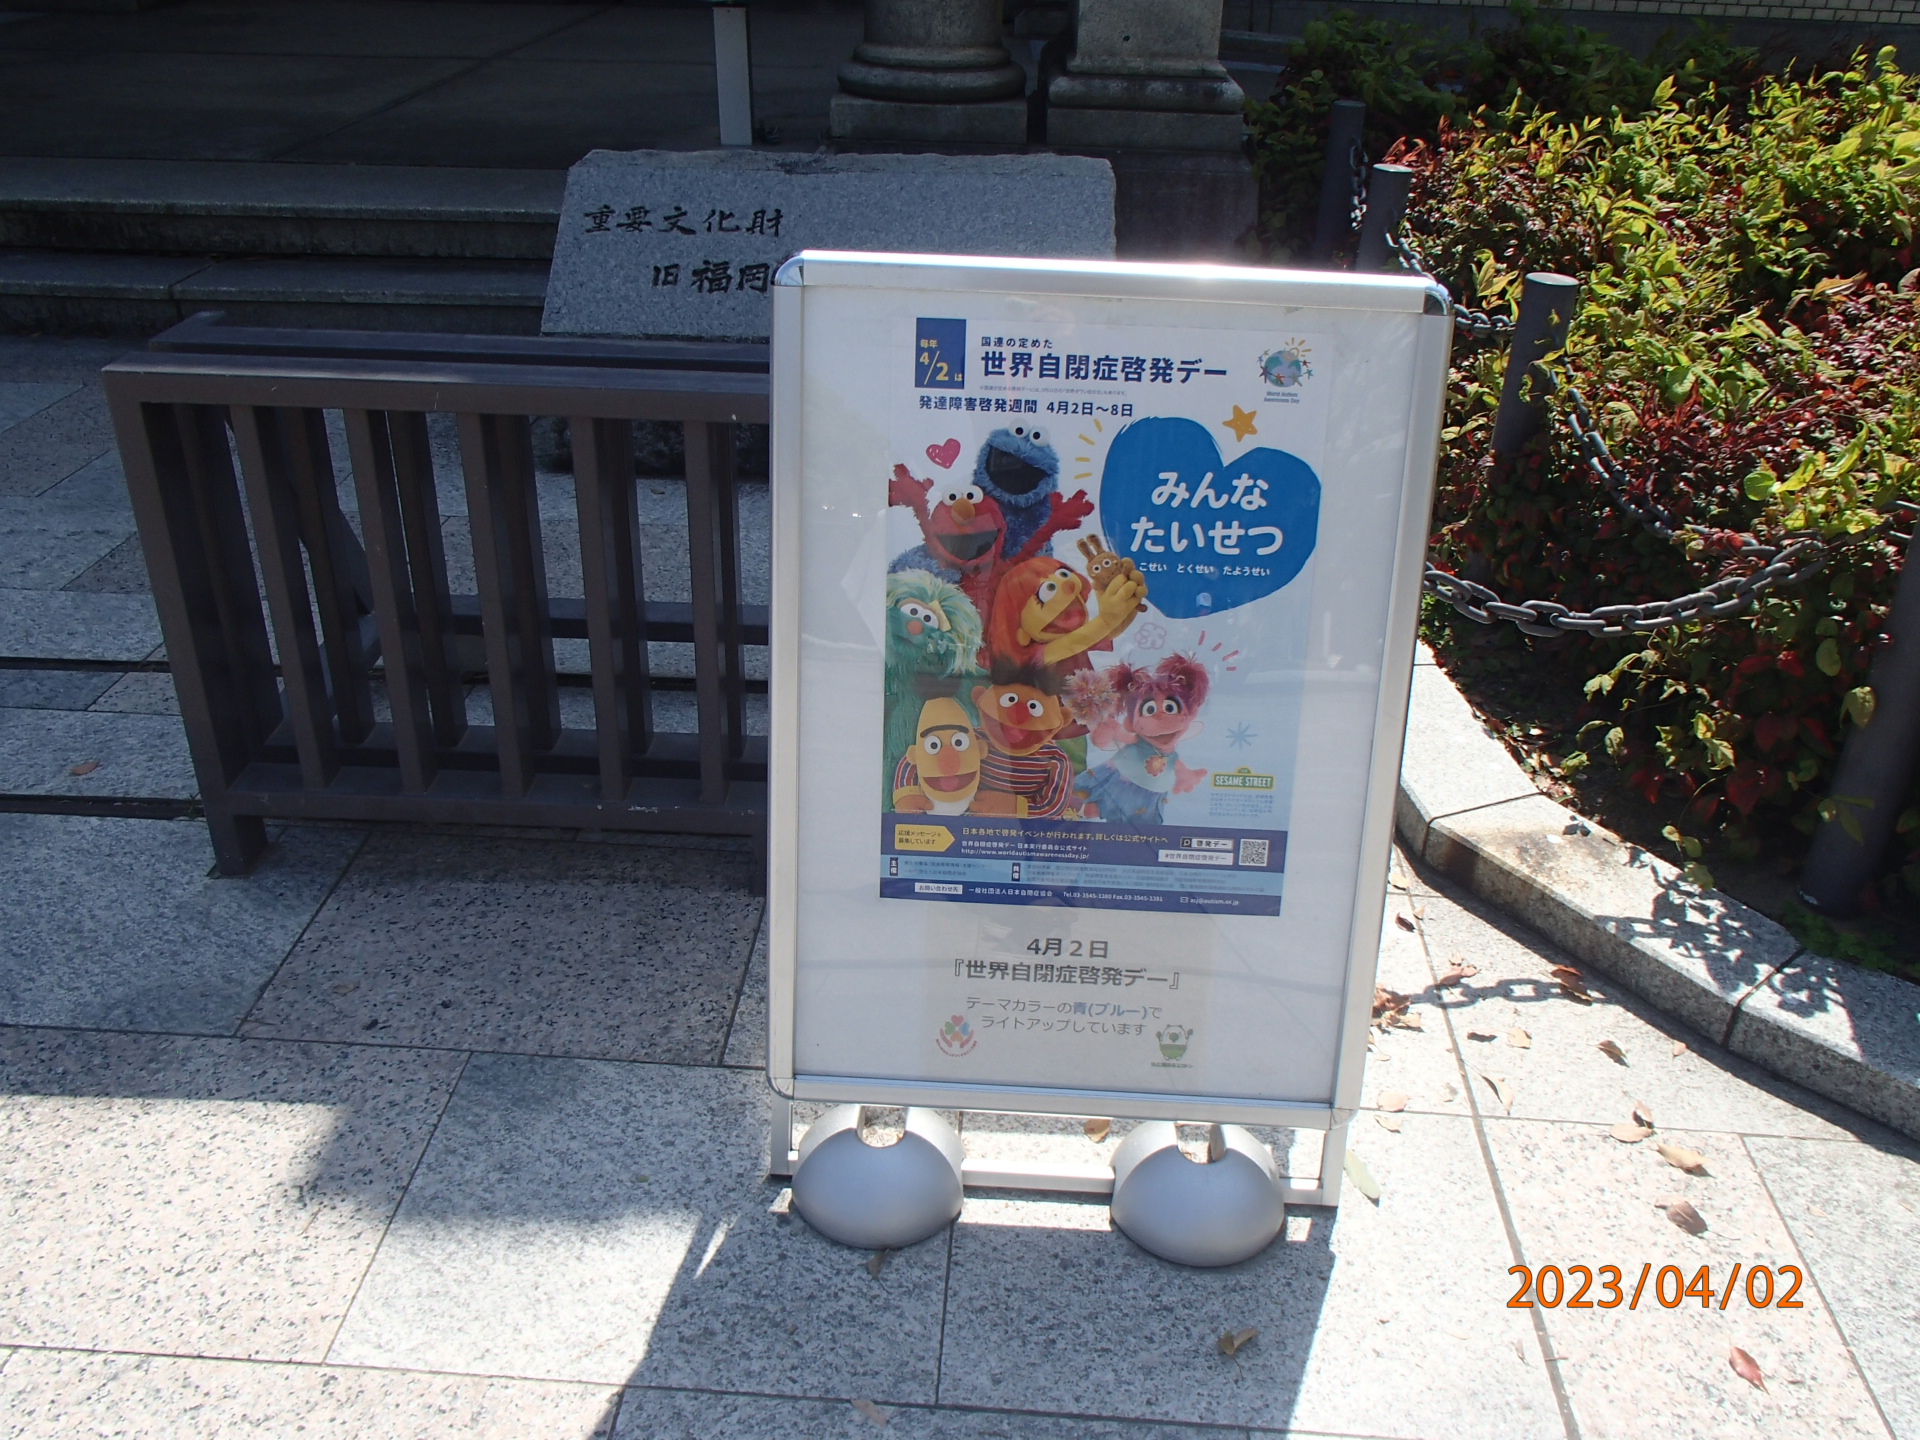 旧福岡県公会堂貴賓館「世界自閉症啓発デー」ライトアップのお知らせ。